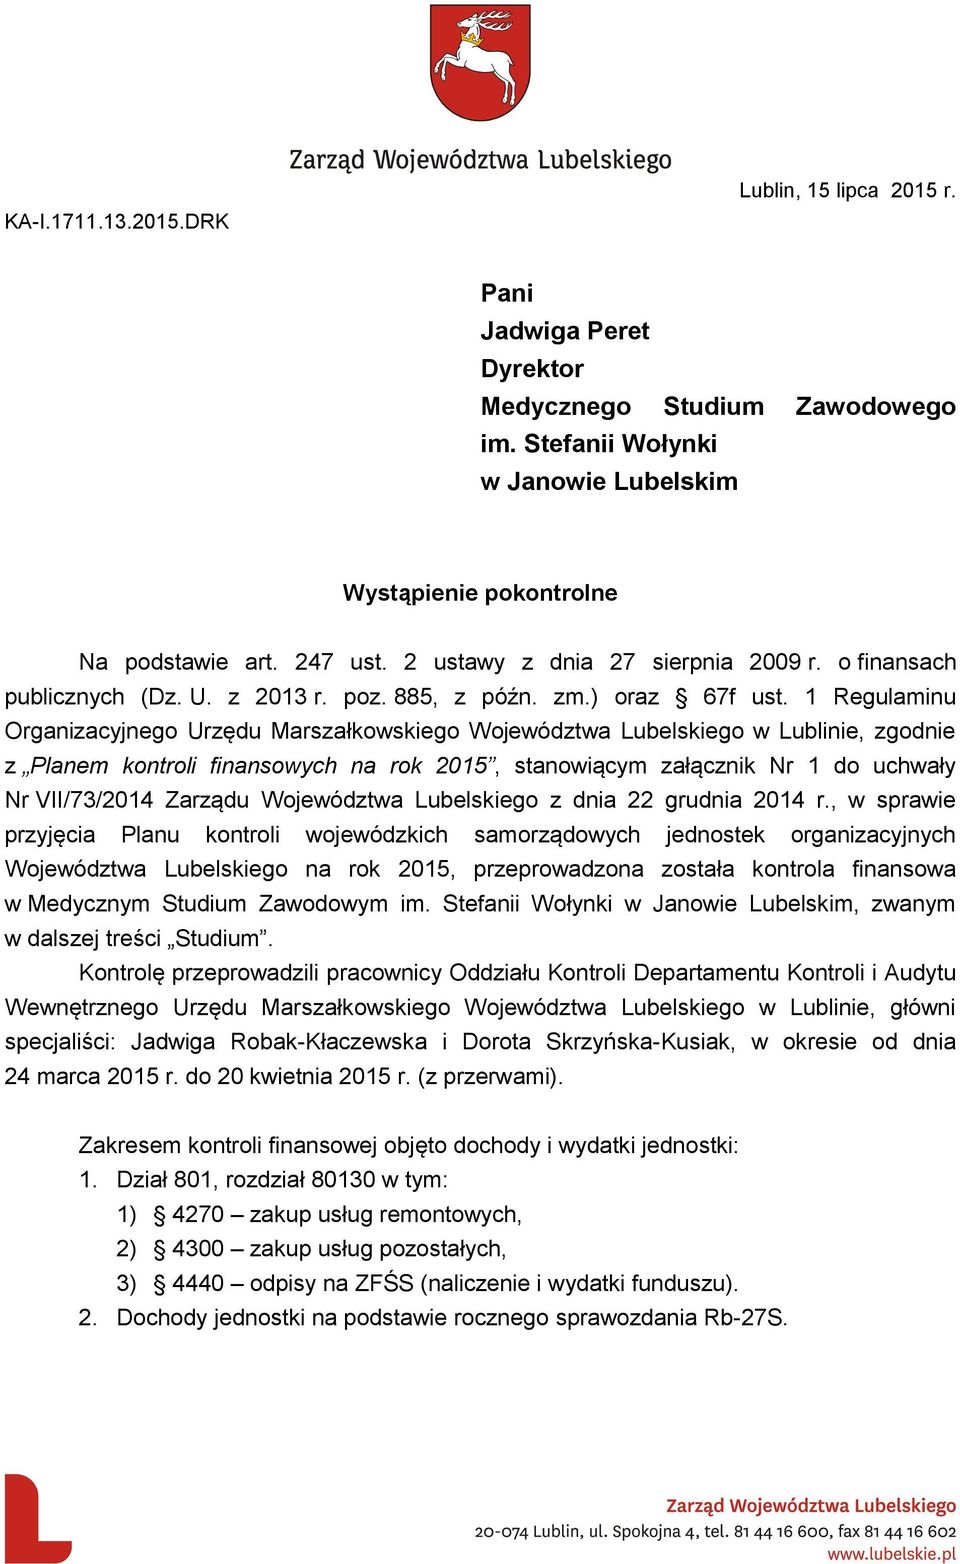 1 Regulaminu Organizacyjnego Urzędu Marszałkowskiego Województwa Lubelskiego w Lublinie, zgodnie z Planem kontroli finansowych na rok 2015, stanowiącym załącznik Nr 1 do uchwały Nr VII/73/2014